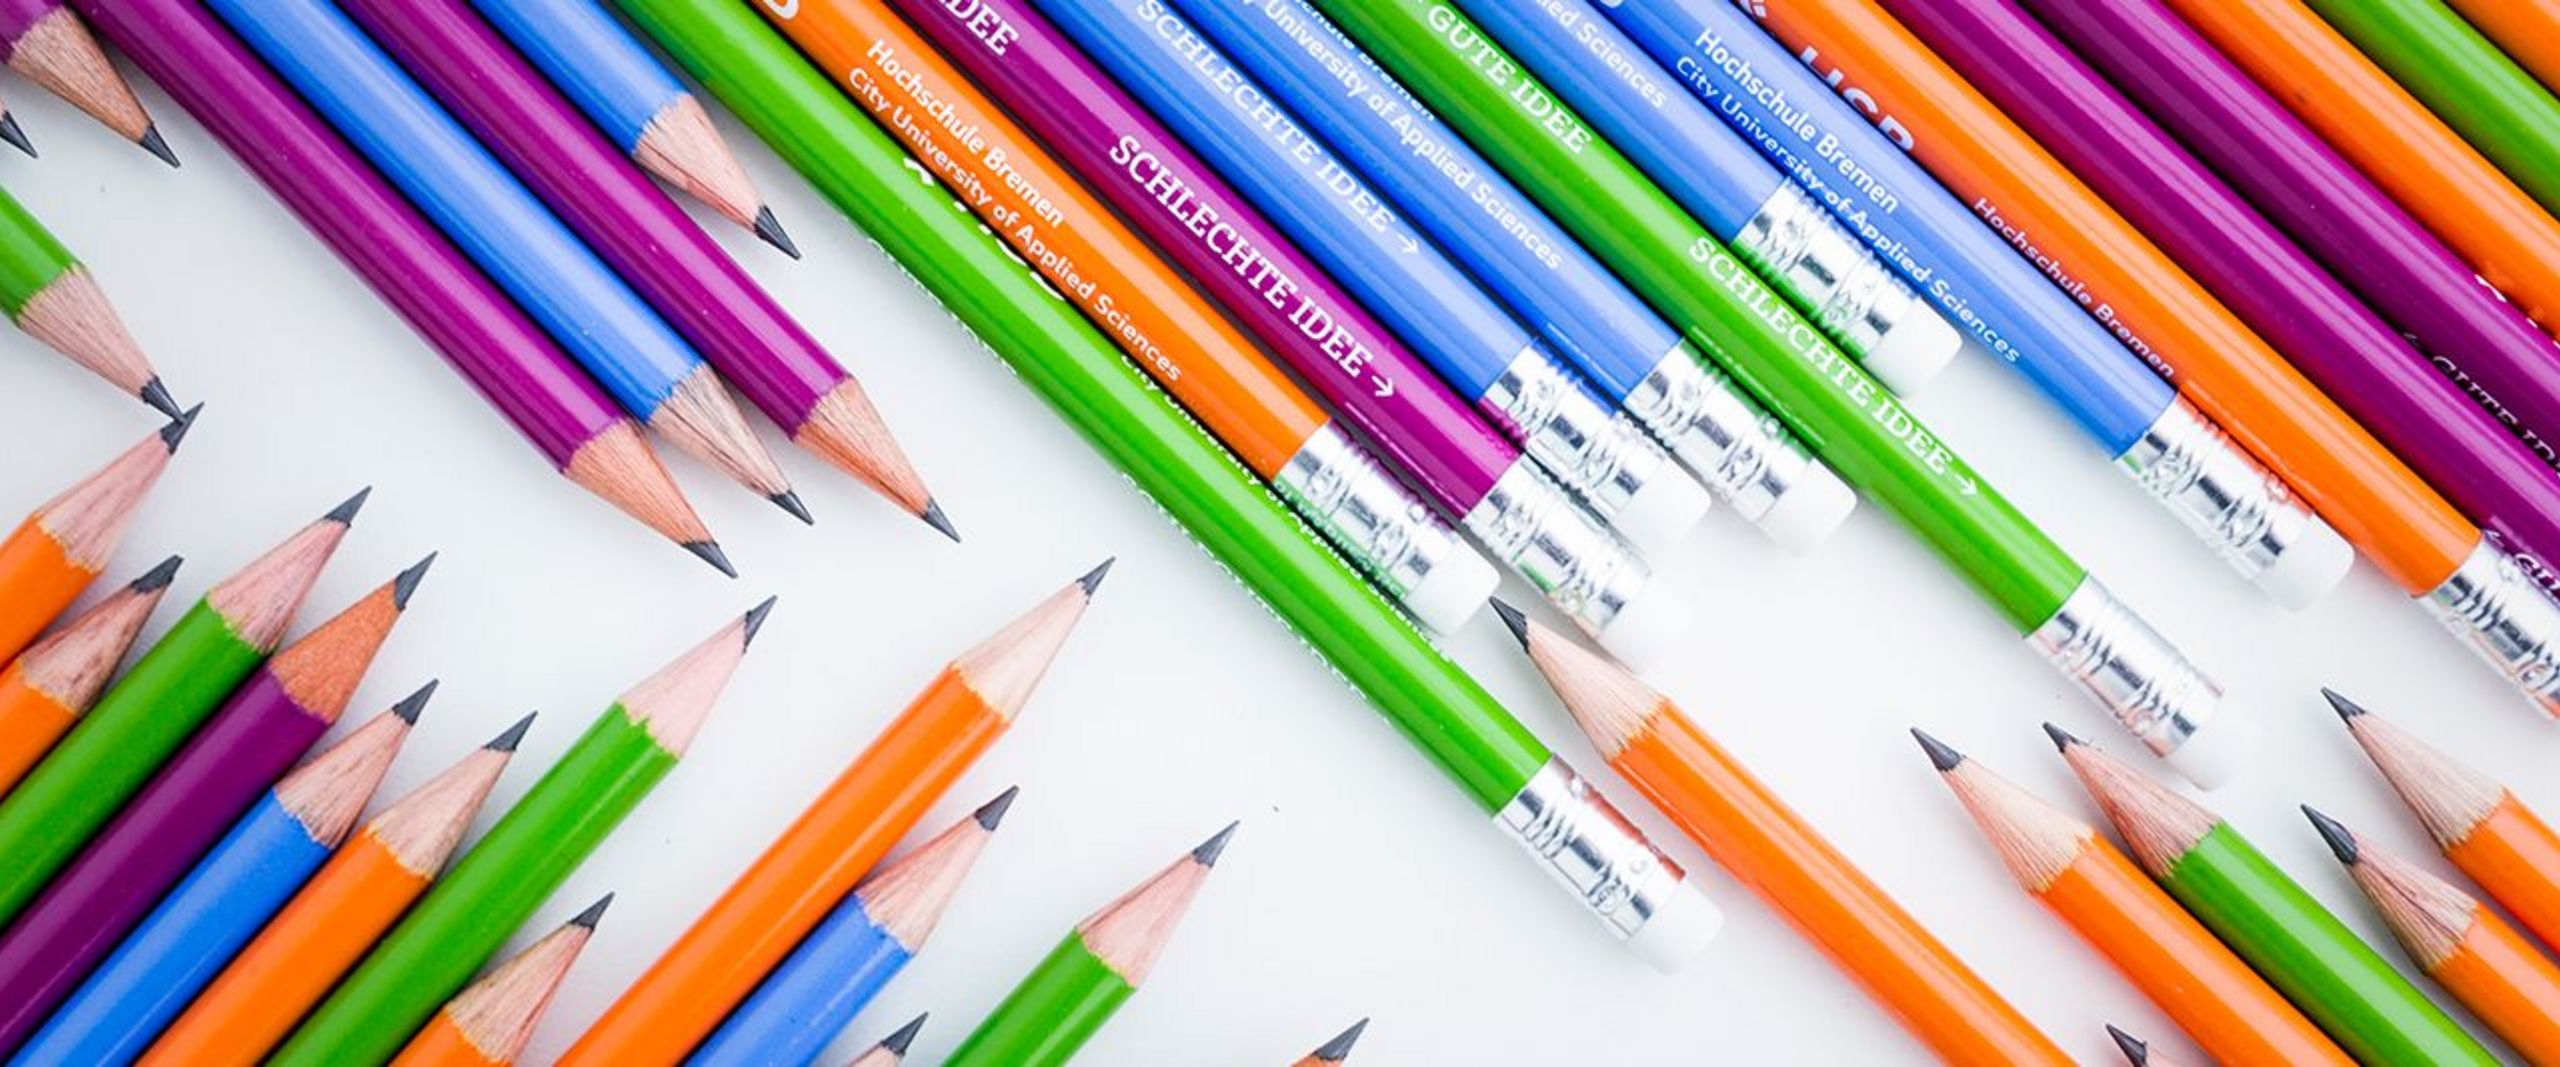 Nebeneinander liegen mehrere blaue, grüne, violette und orangene Bleistifte, die das HSB-Logo tragen.